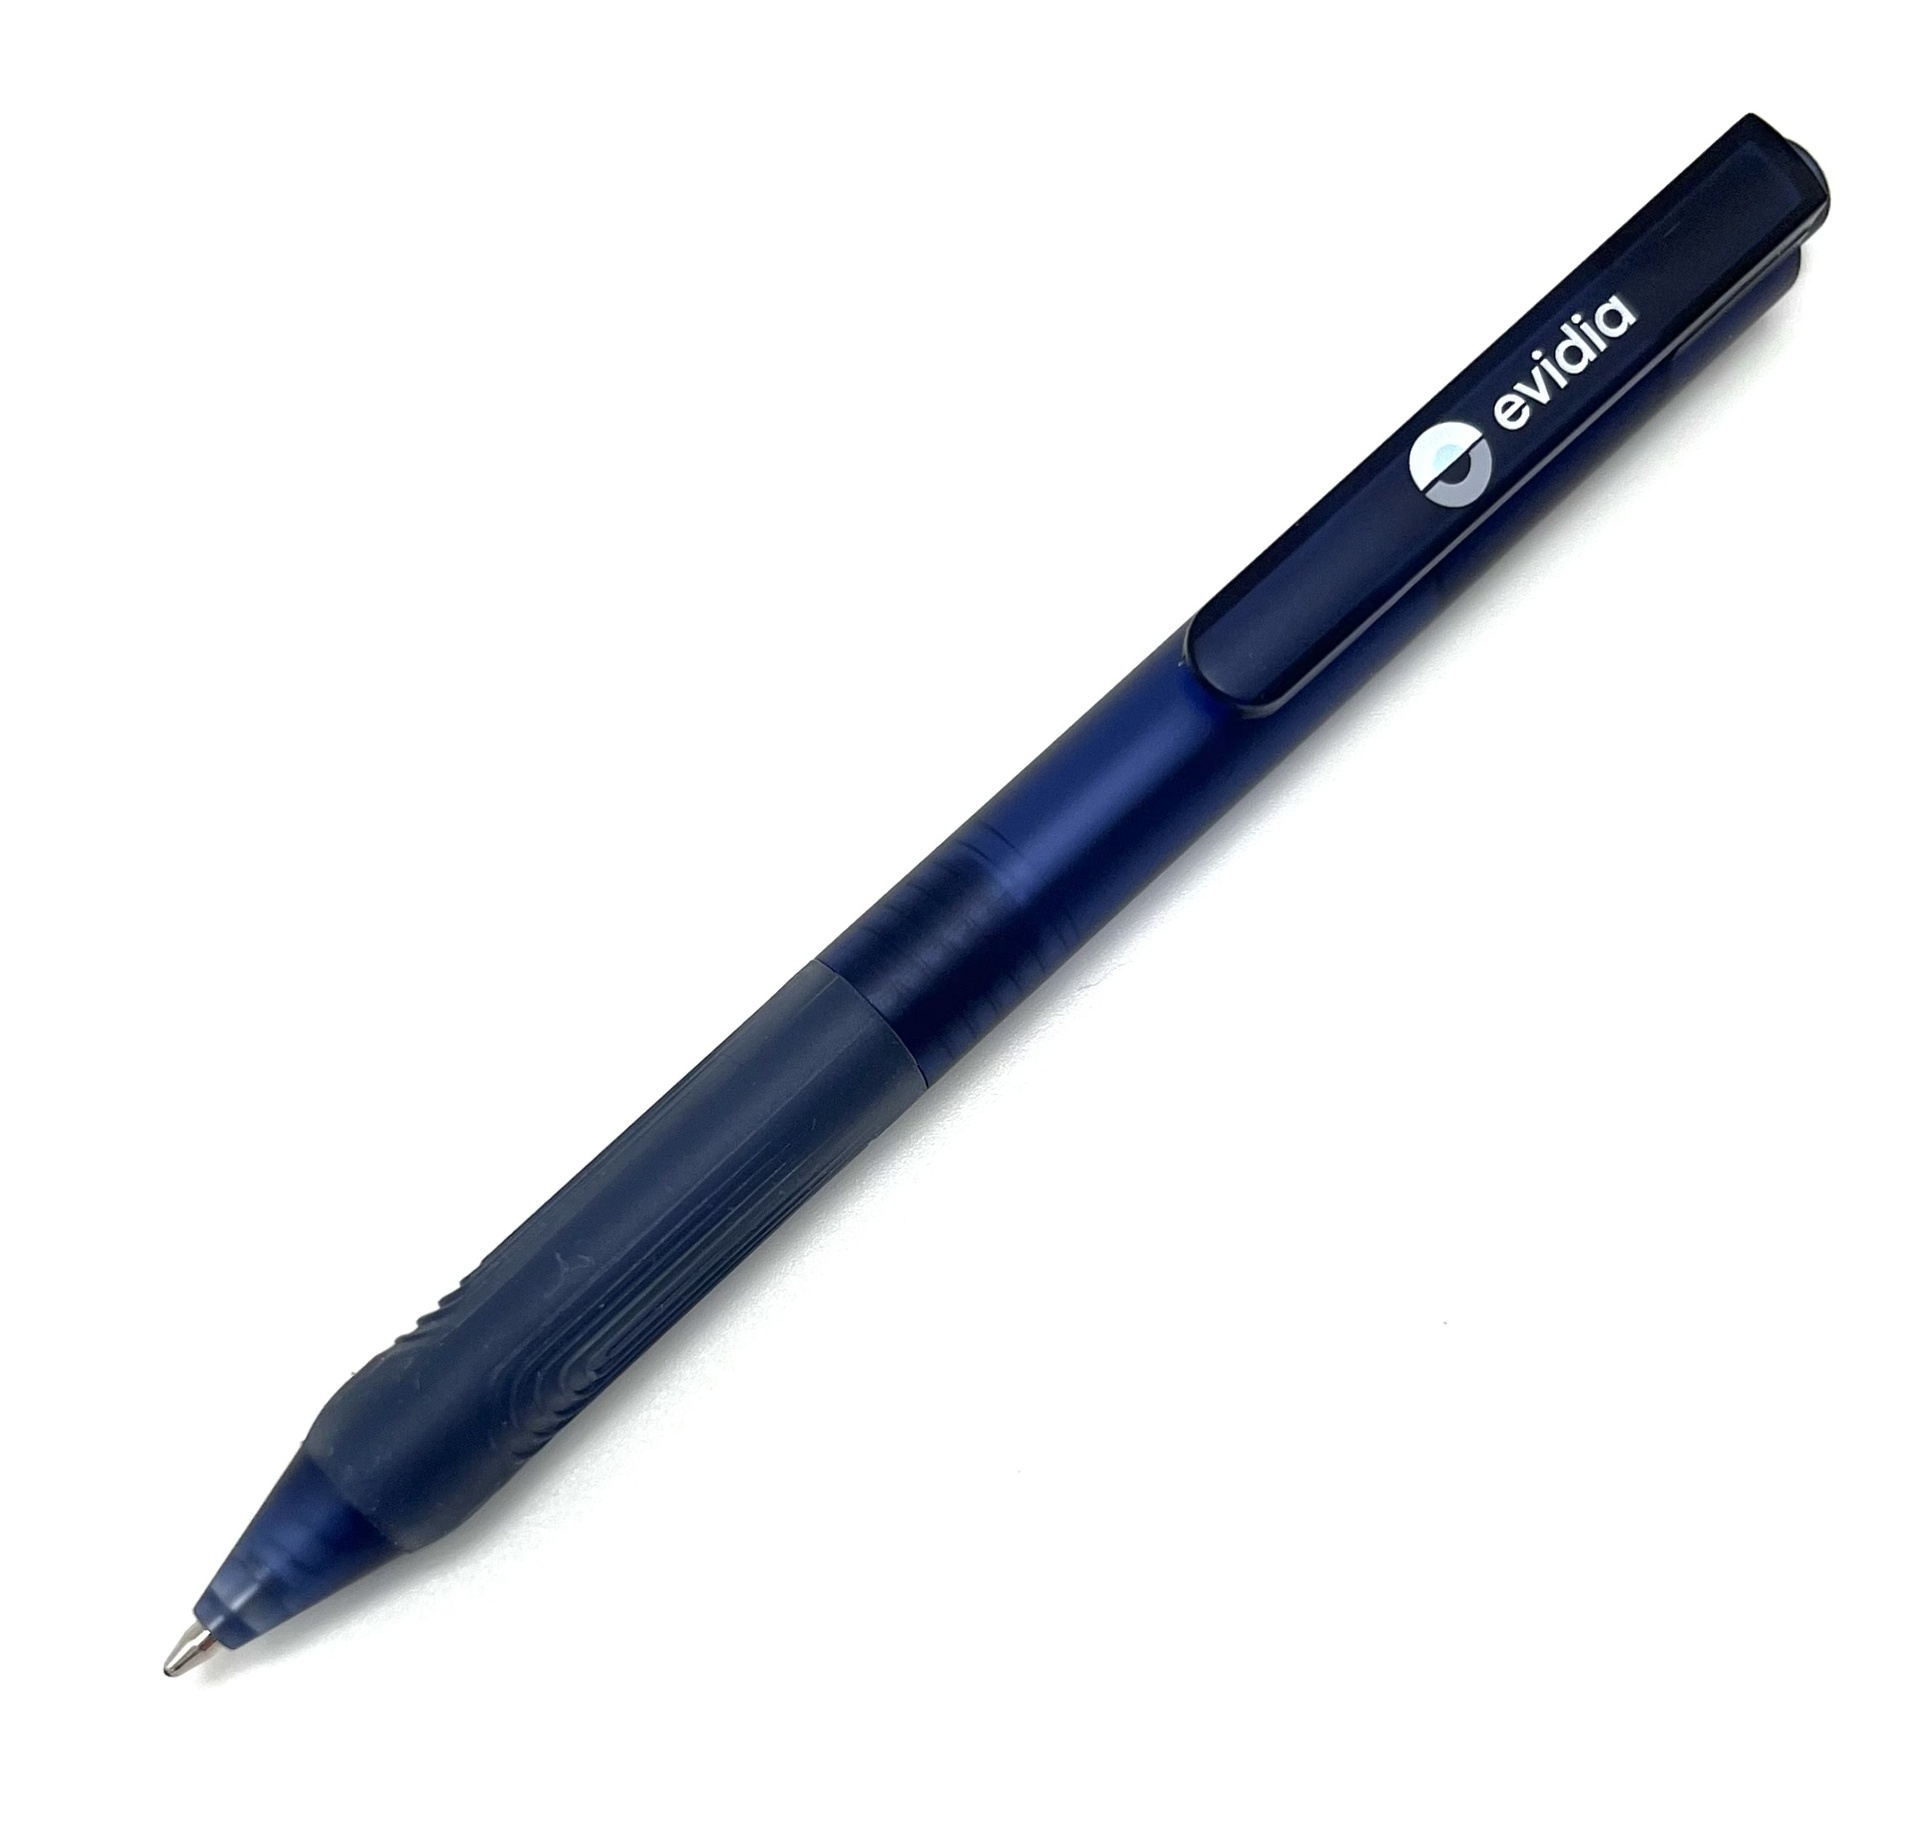 [EEEVID001] Penna X9 blå grip med logo på clips 50st/fp